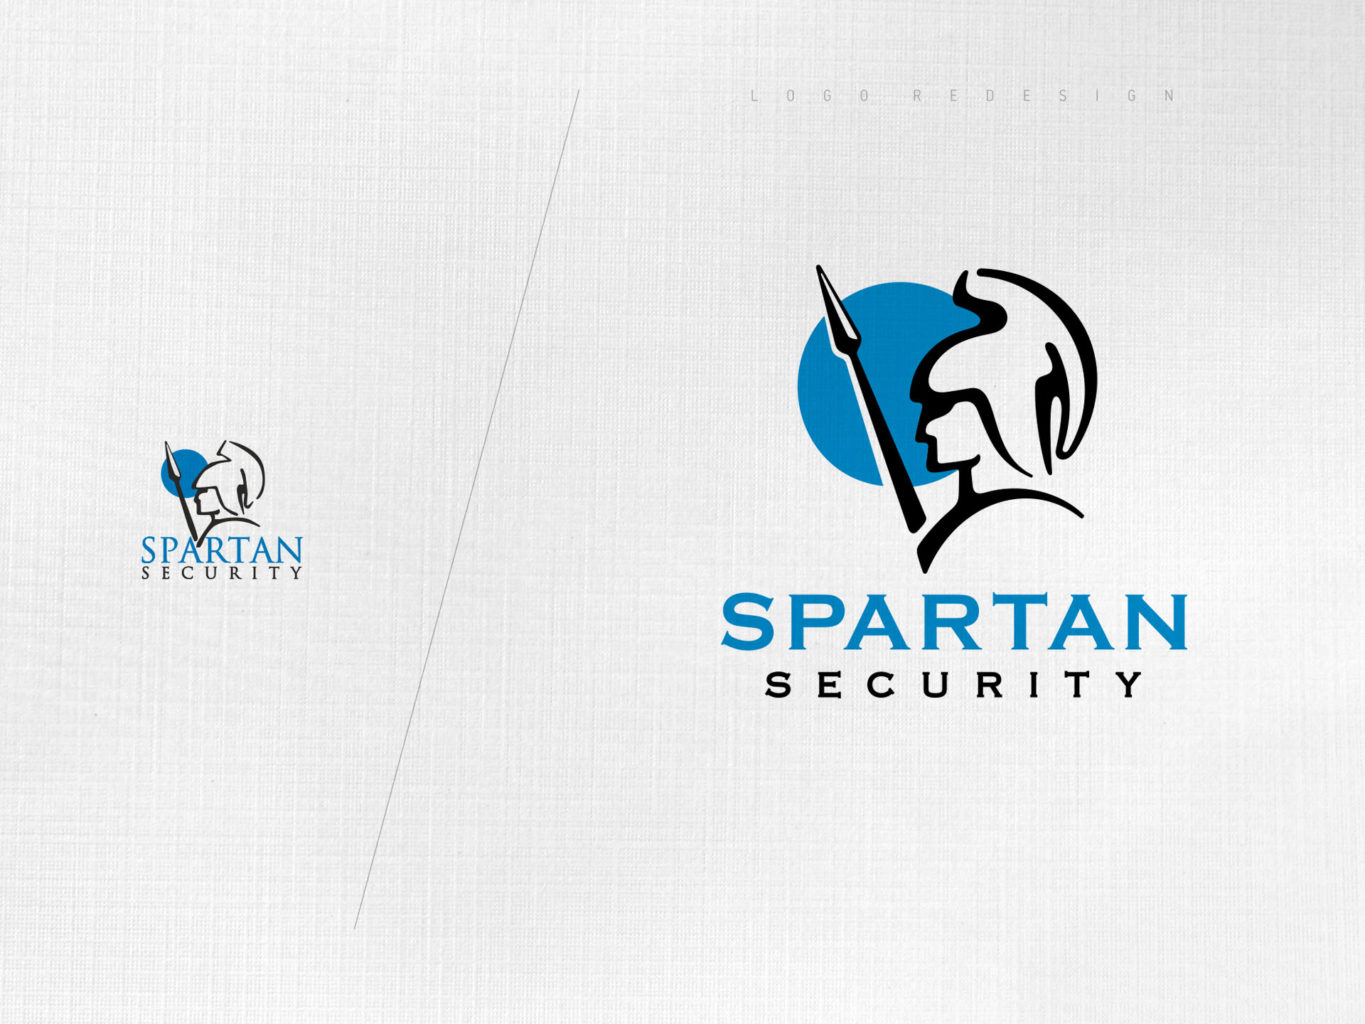 spartan security logo redesign